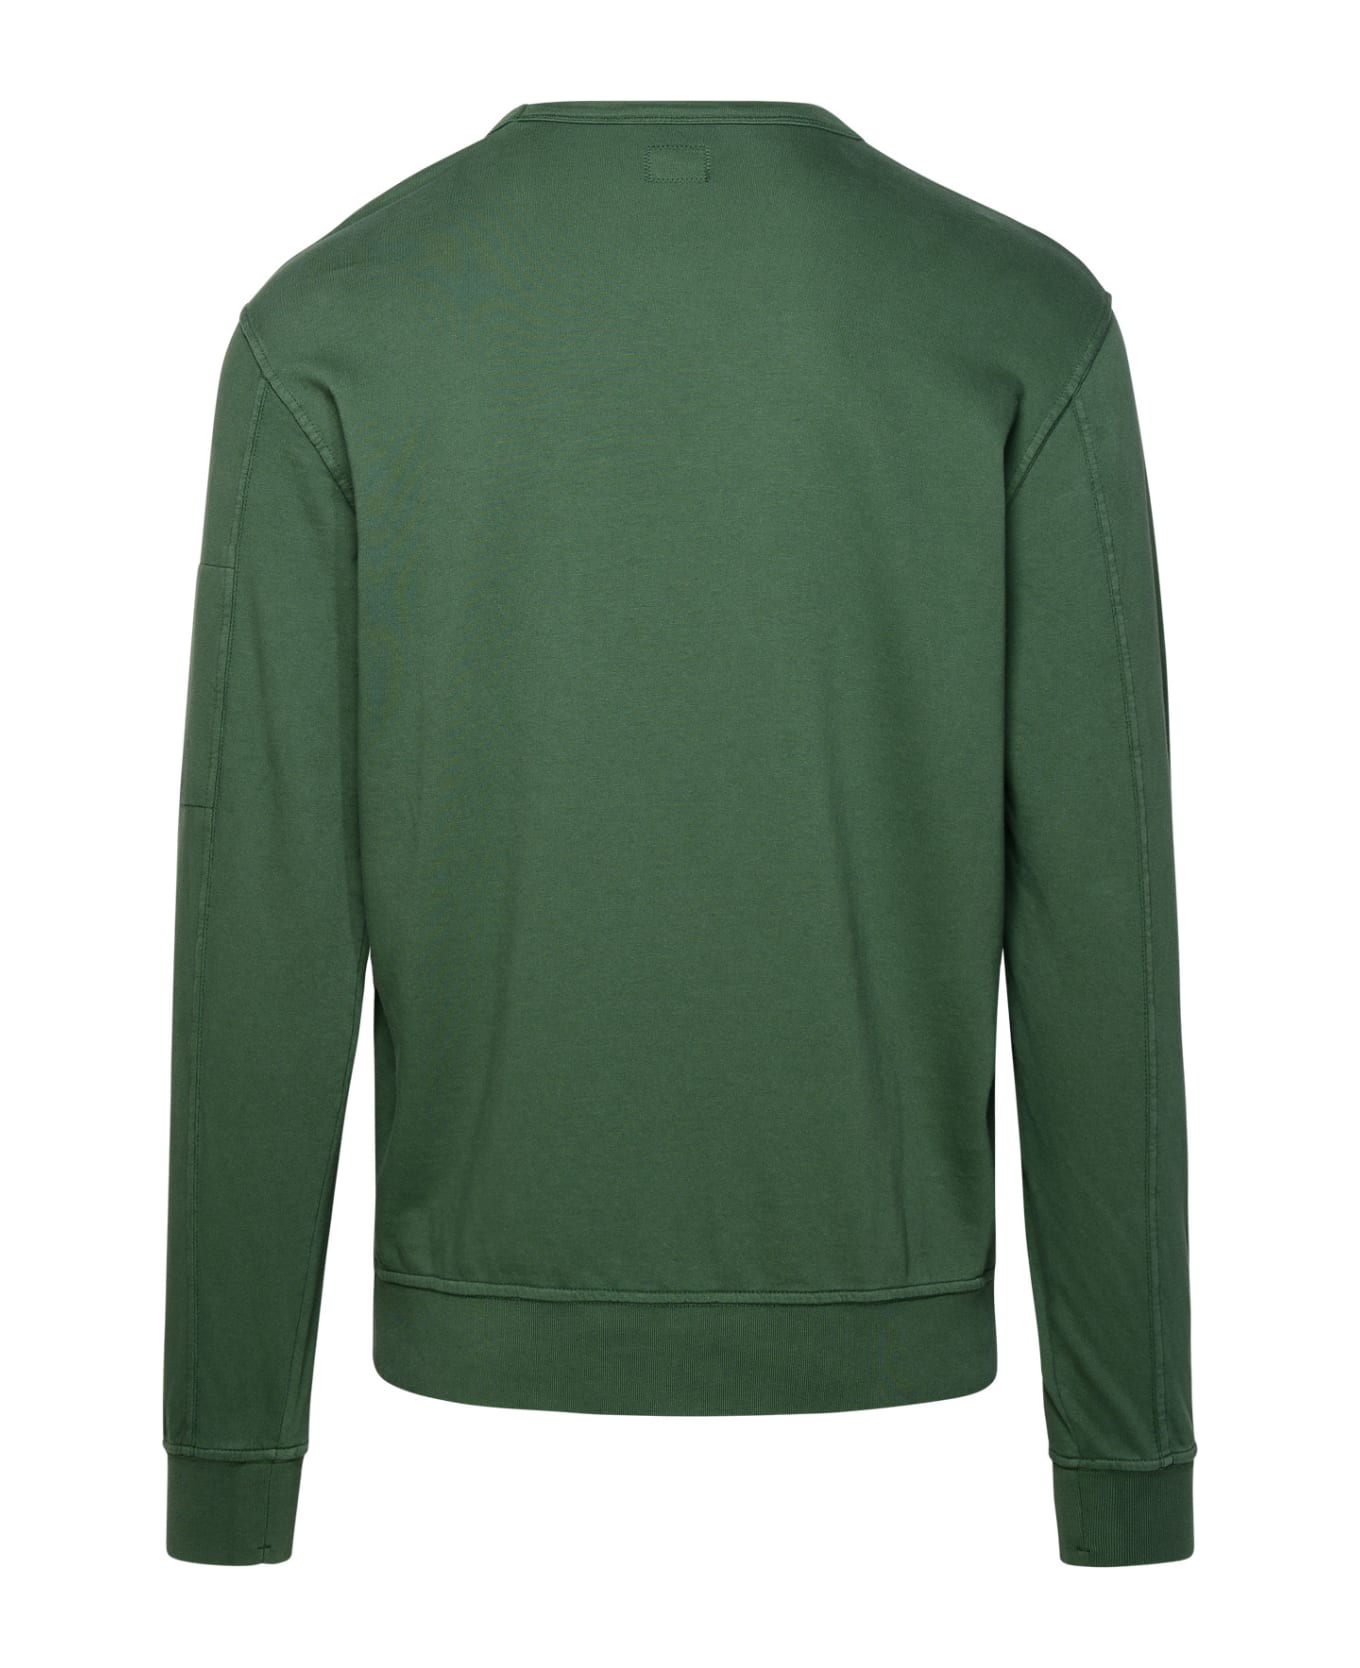 C.P. Company 'light Fleece' Green Cotton Sweatshirt - Verde